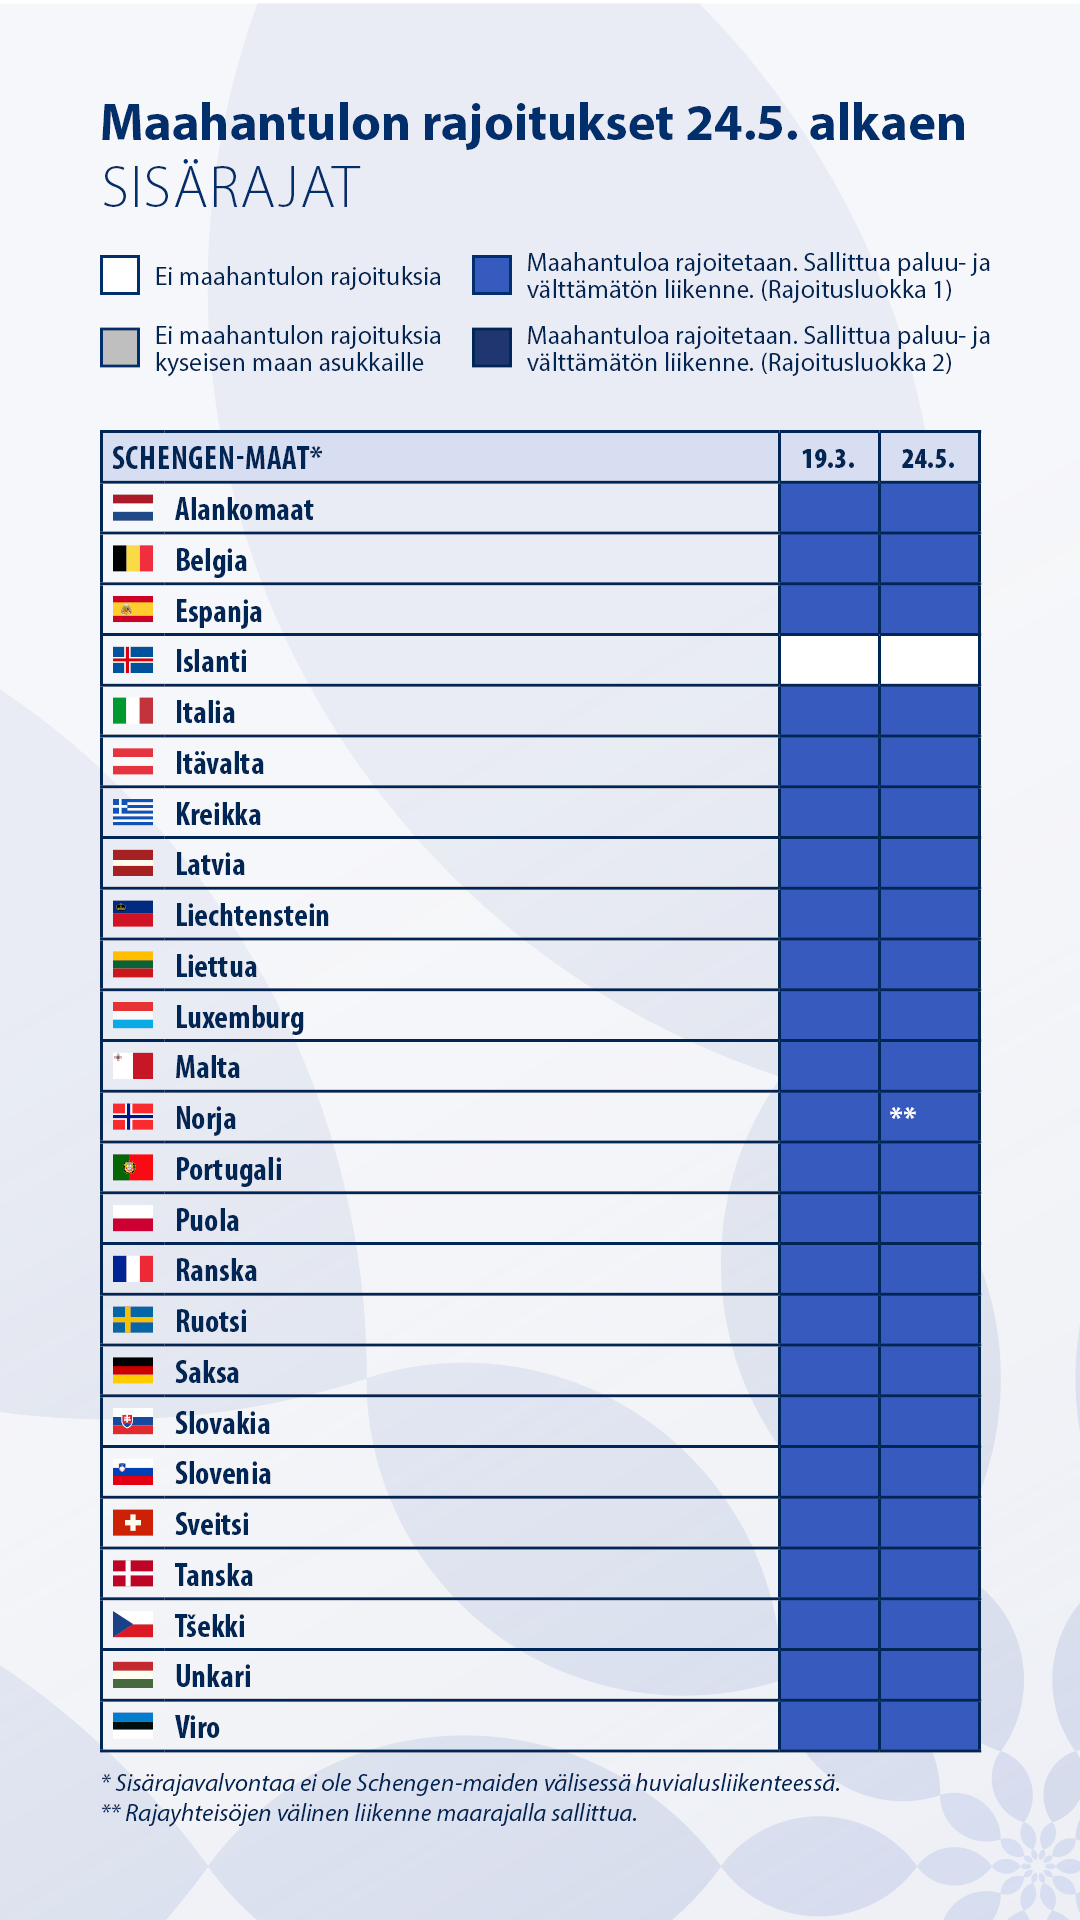 Taulukko maahantulorajoituksista Schengen-alueen sisärajoilla: Suomi rajoittaa maahantuloa kaikista Schengen-maista paitsi Islannista. Schengen-maita ovat EU:n jäsenmaista Alankomaat, Belgia, Espanja, Italia, Itävalta, Kreikka, Latvia, Liettua, Luxemburg, Malta, Portugali, Puola, Ranska, Ruotsi, Saksa, Slovakia, Slovenia, Suomi, Tanska, Tšekki, Unkari ja Viro sekä EU:n ulkopuolisista maista Islanti, Liechtenstein, Norja ja Sveitsi.  